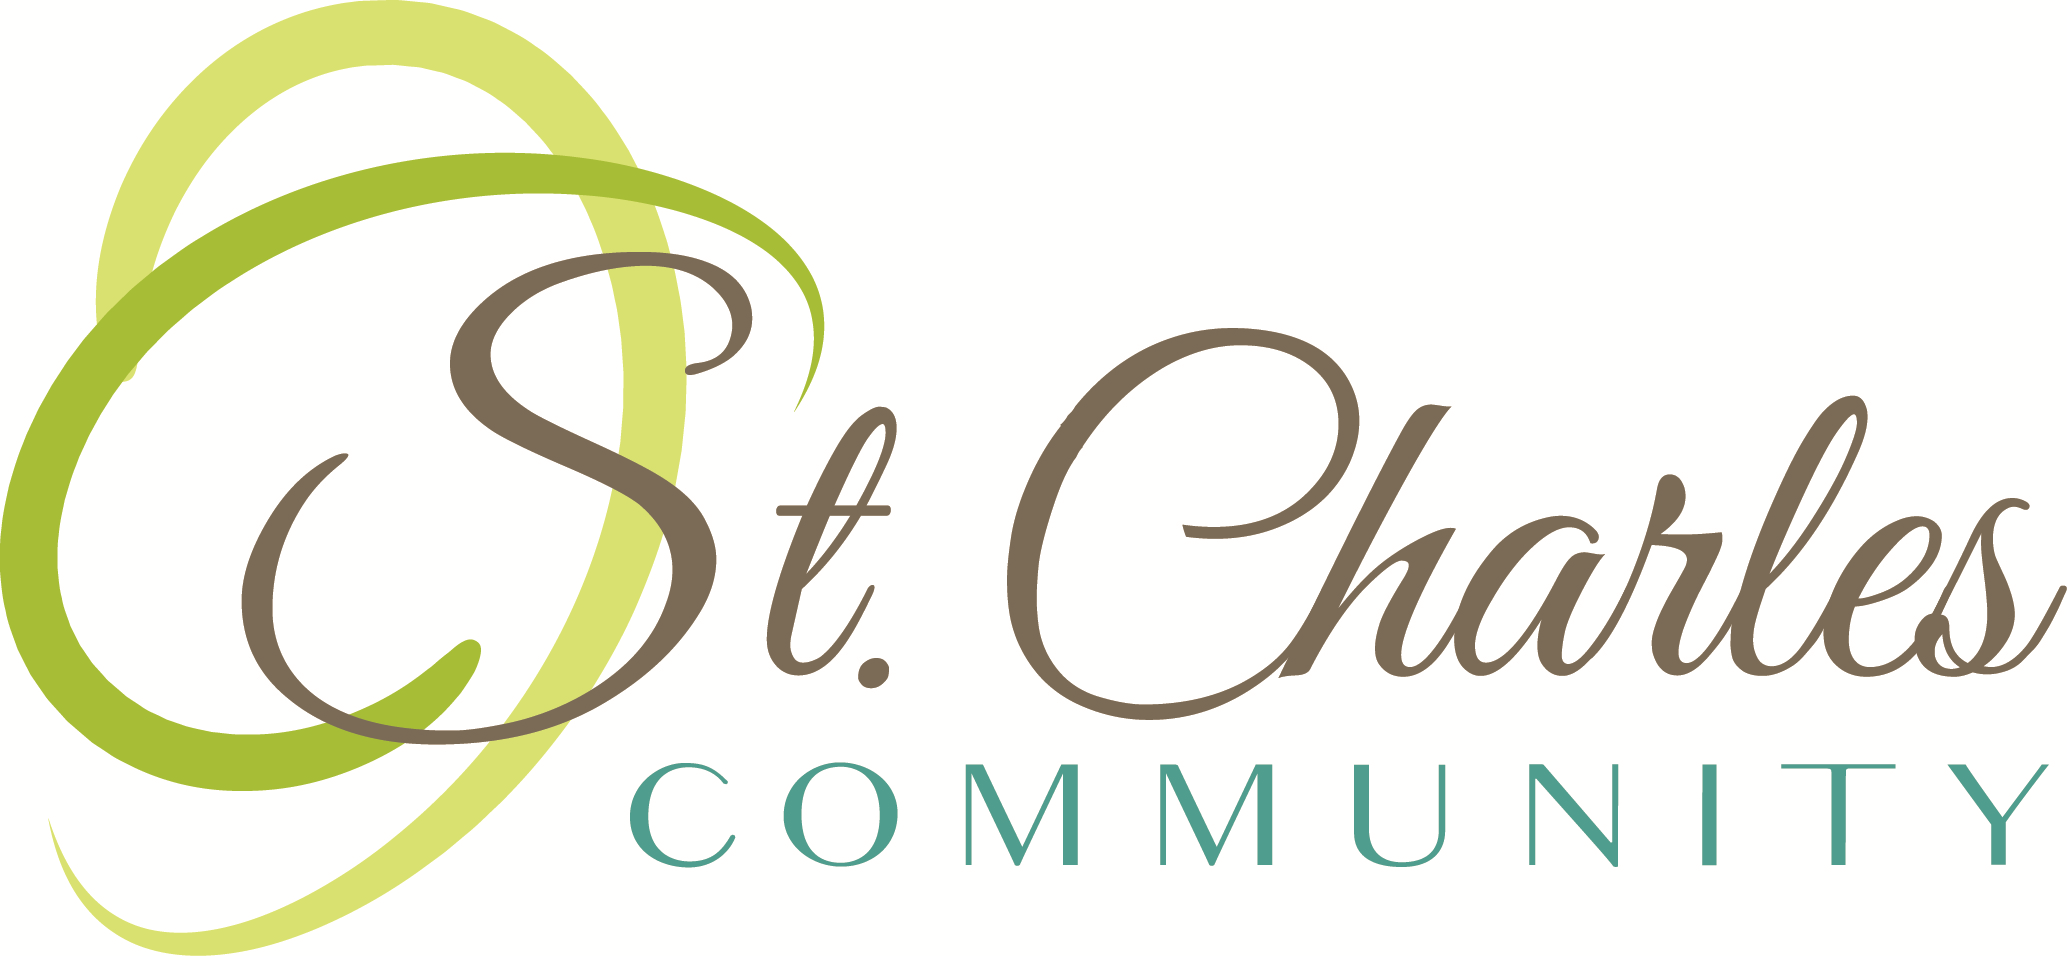 St. Charles Community logo